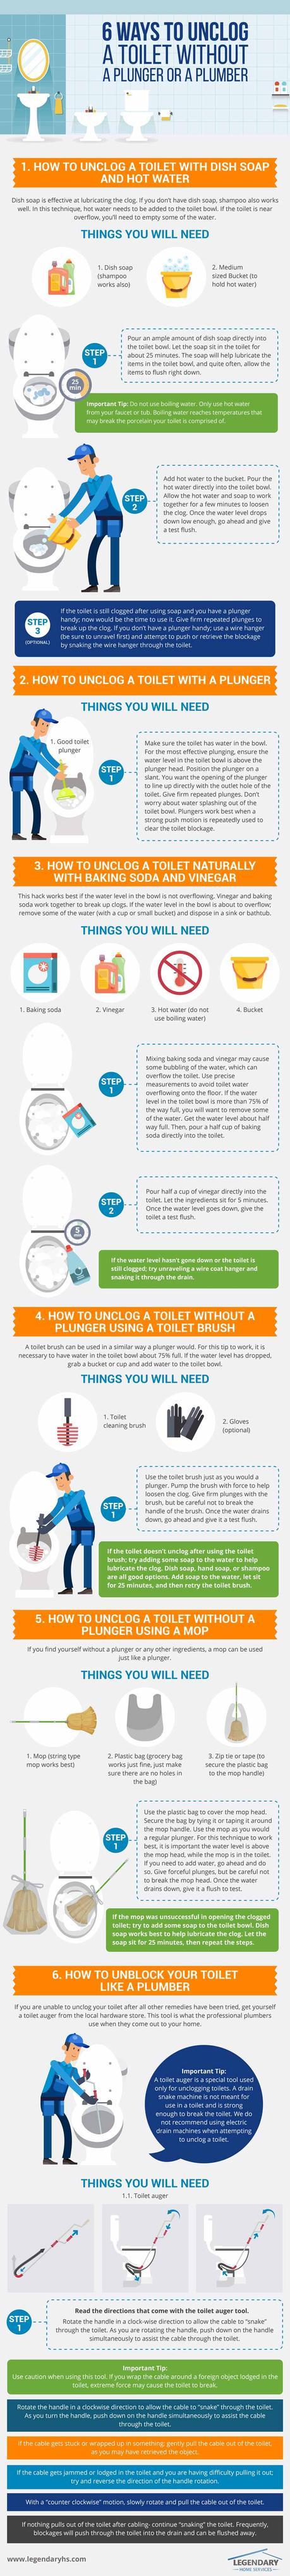 toilet infographic